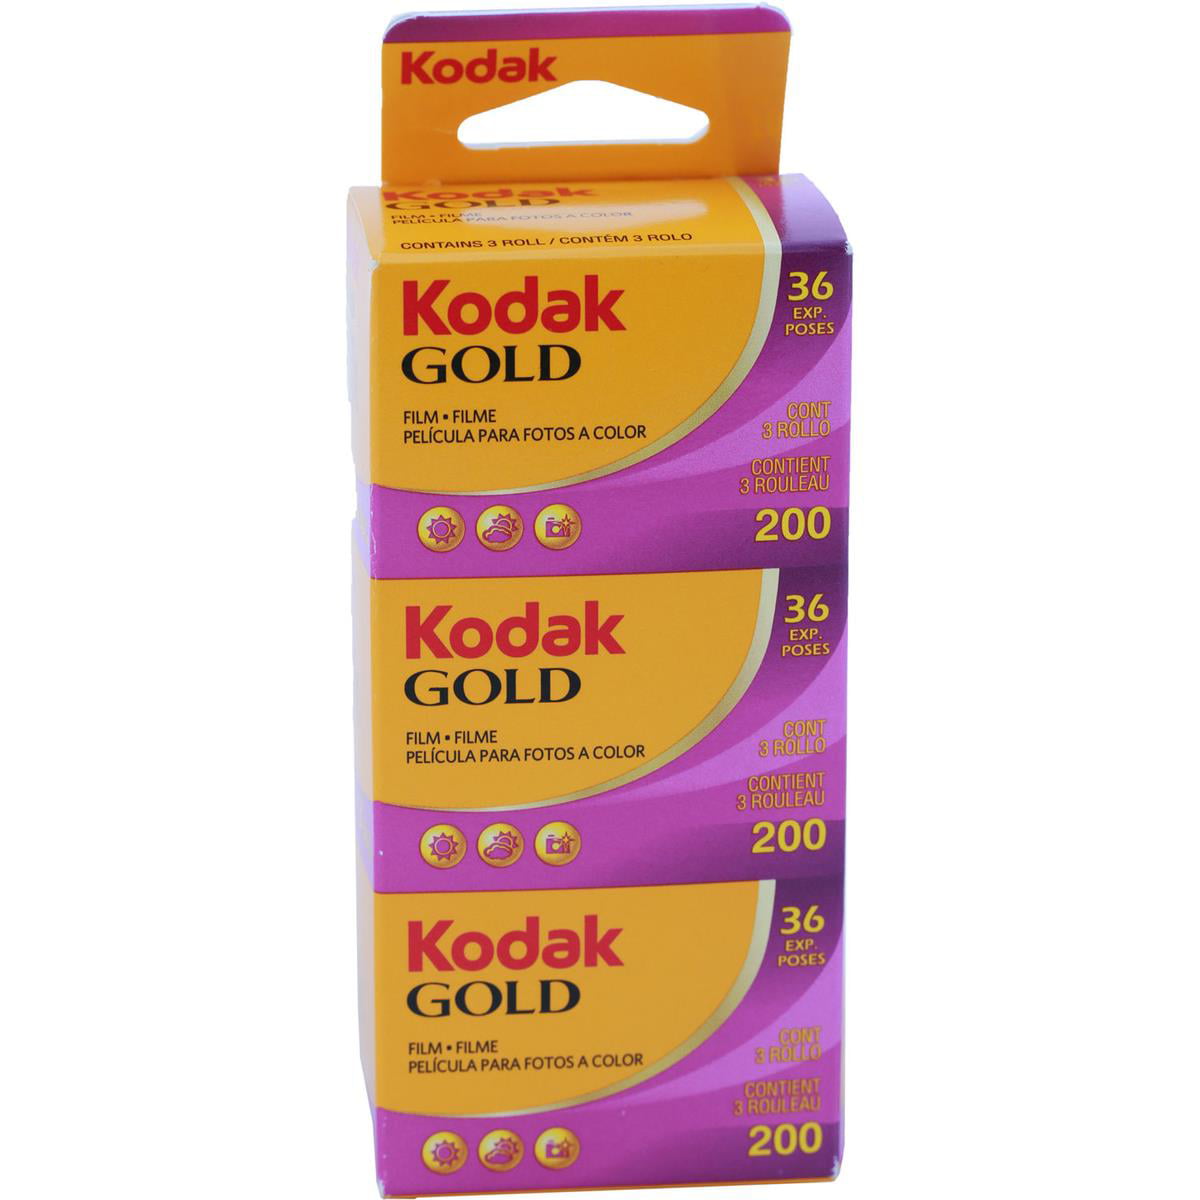 Kodak Gold 200 24exp 3 pack 6033971 ISO 200 35mm Jan 2021 Expiration 